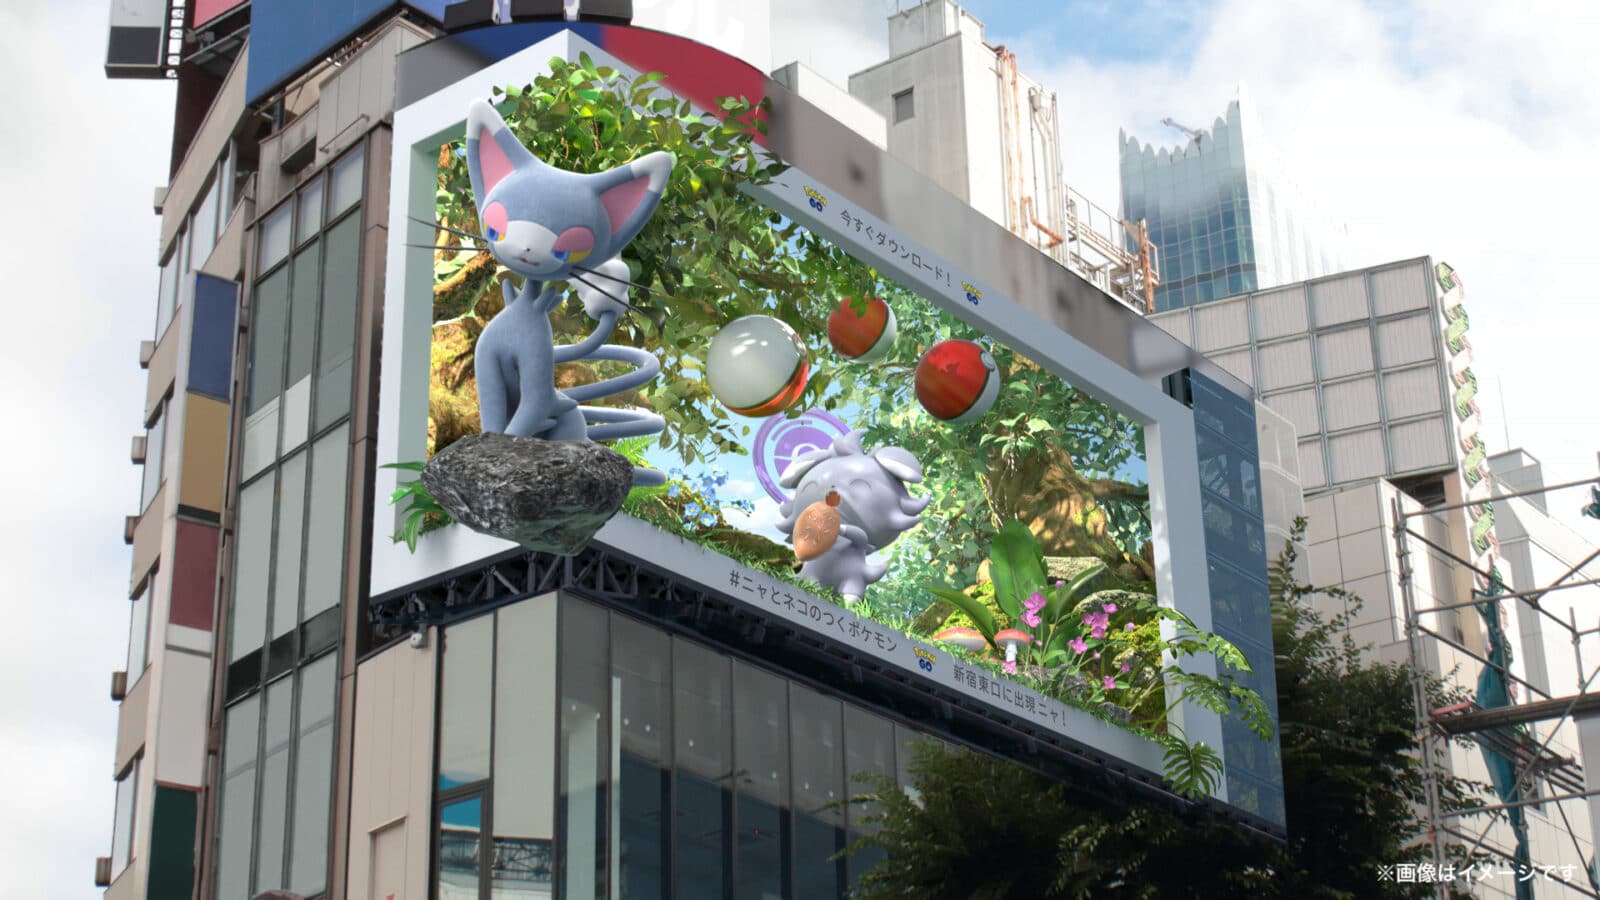 3D billboard advertising